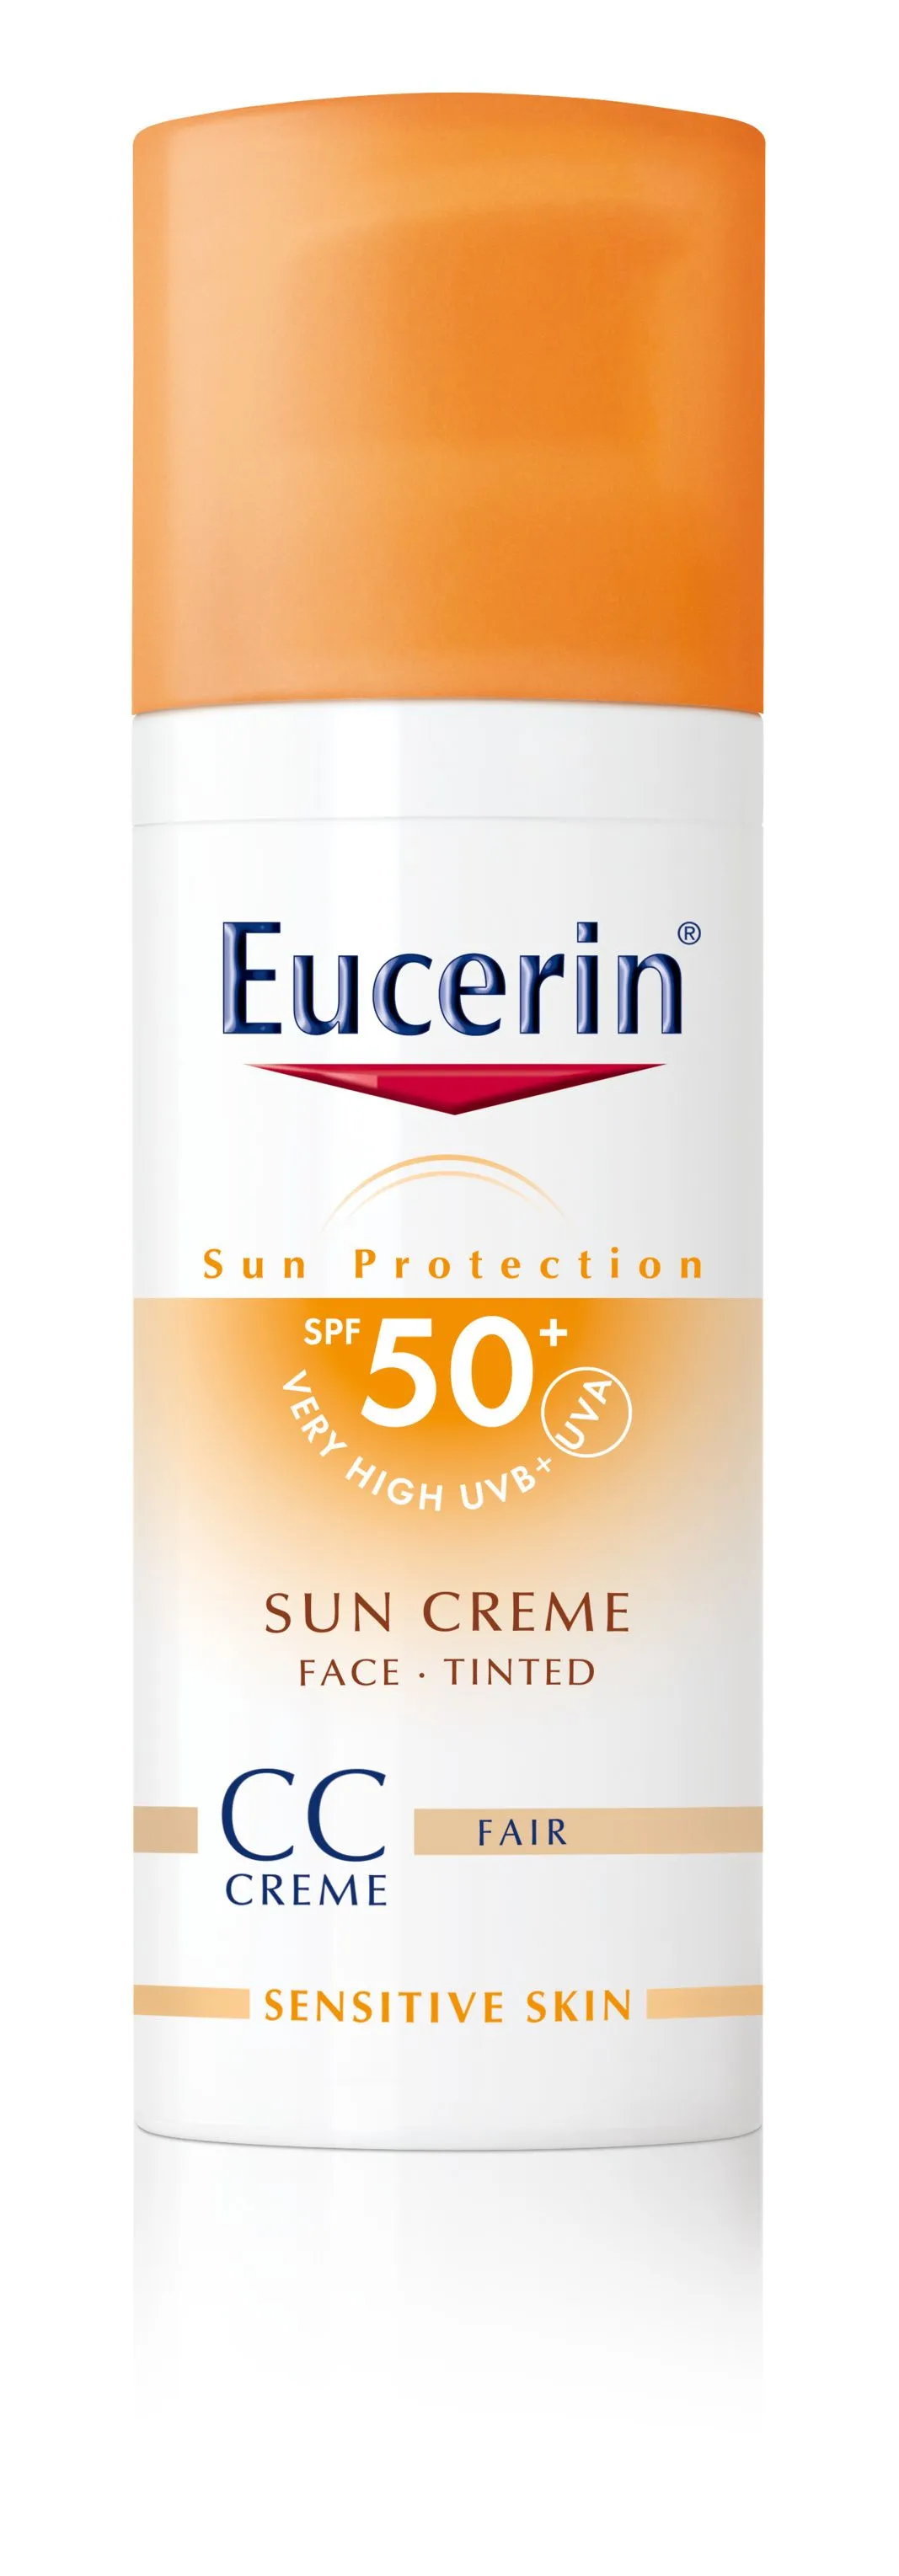 EUCERIN SUN CC krém na opalování na obličej SPF 50+ světlý 50ml